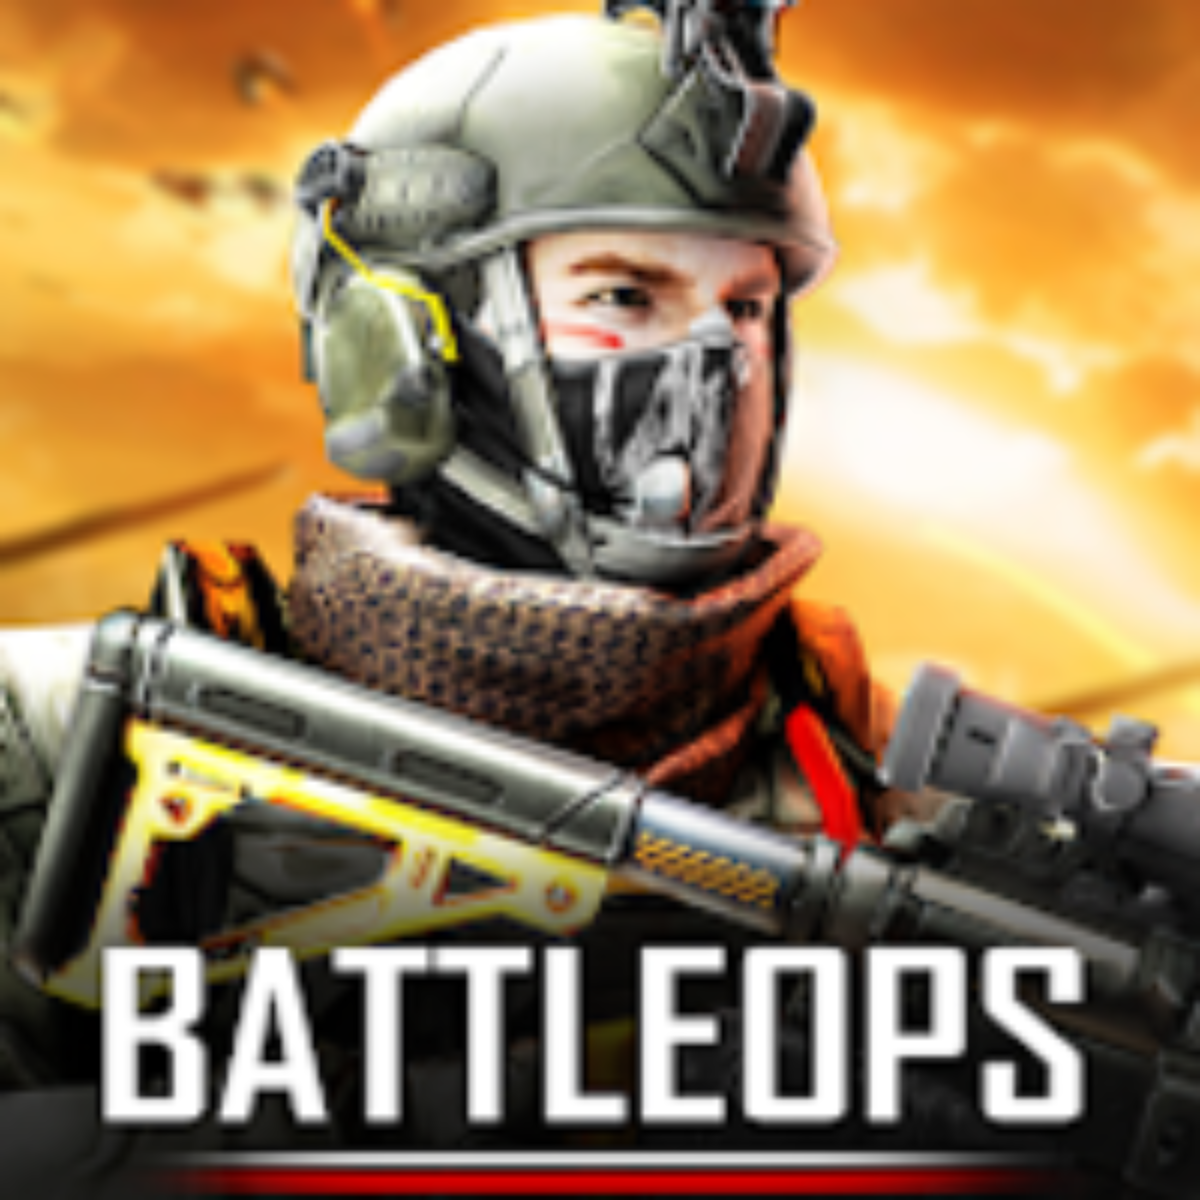 Battlefield Royale The One v0.4.17 Apk Mod [Mod Menu / Munição